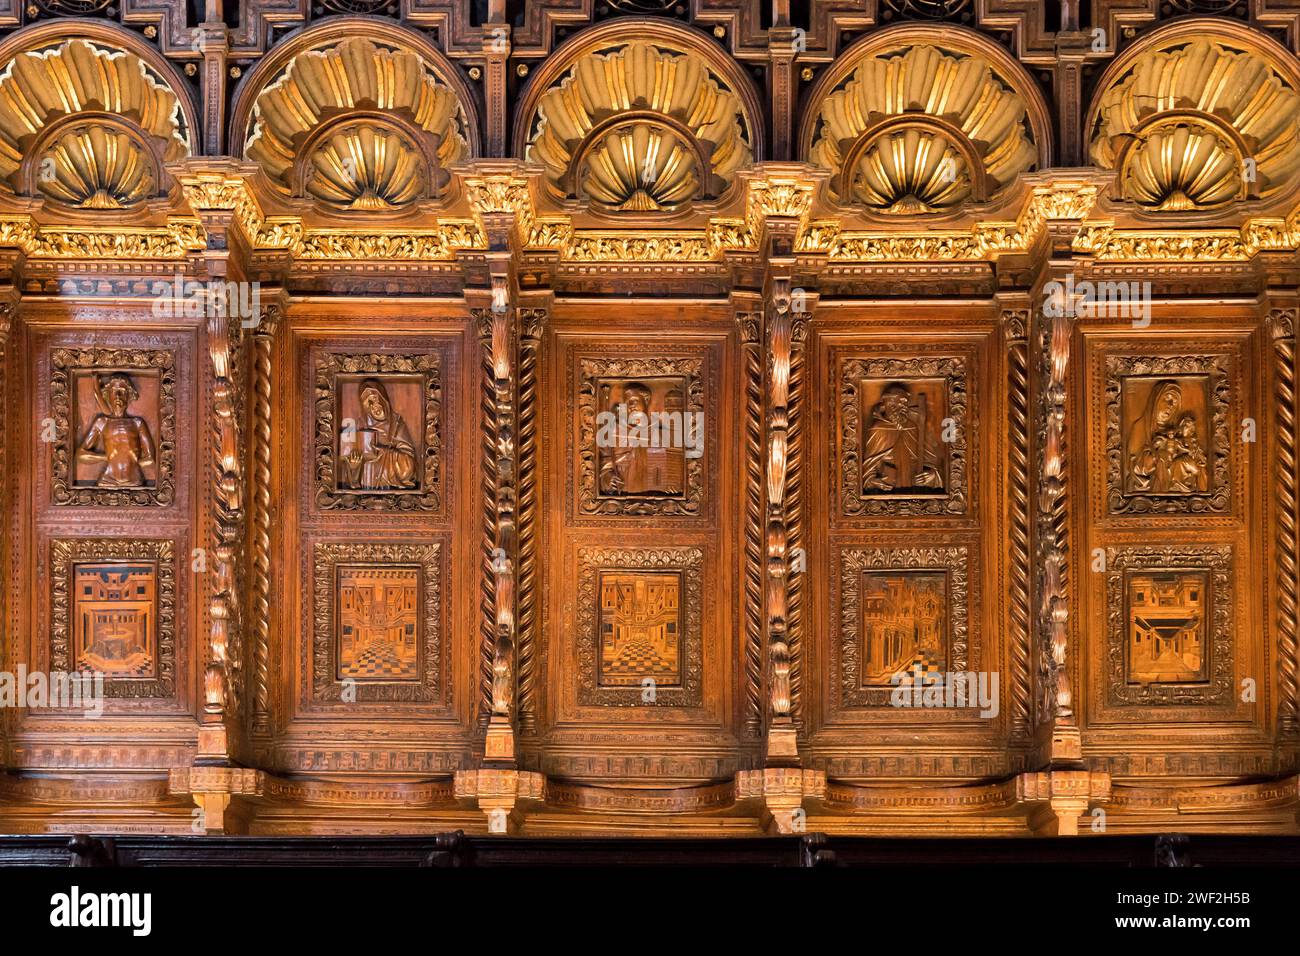 Coro gotico ligneo dei Frati di Marco e Francesco Cozzi del XV secolo nella Basilica gotica di Santa Maria Gloriosa dei Frari i Foto Stock